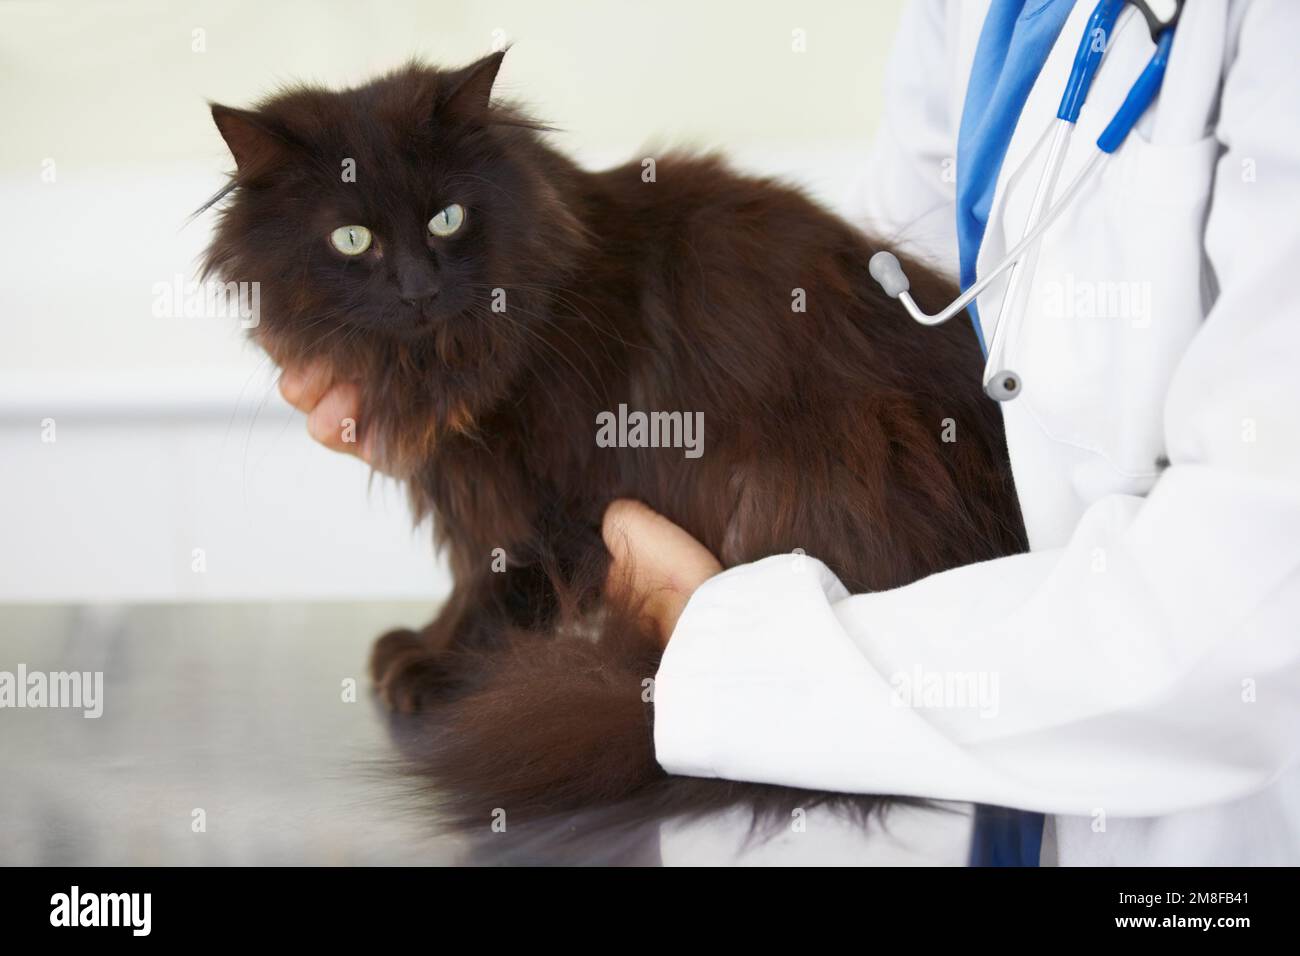 Fass mich nicht an. Eine genervte Katze, die von der Tierärztin auf den Tisch gestellt wird. Stockfoto